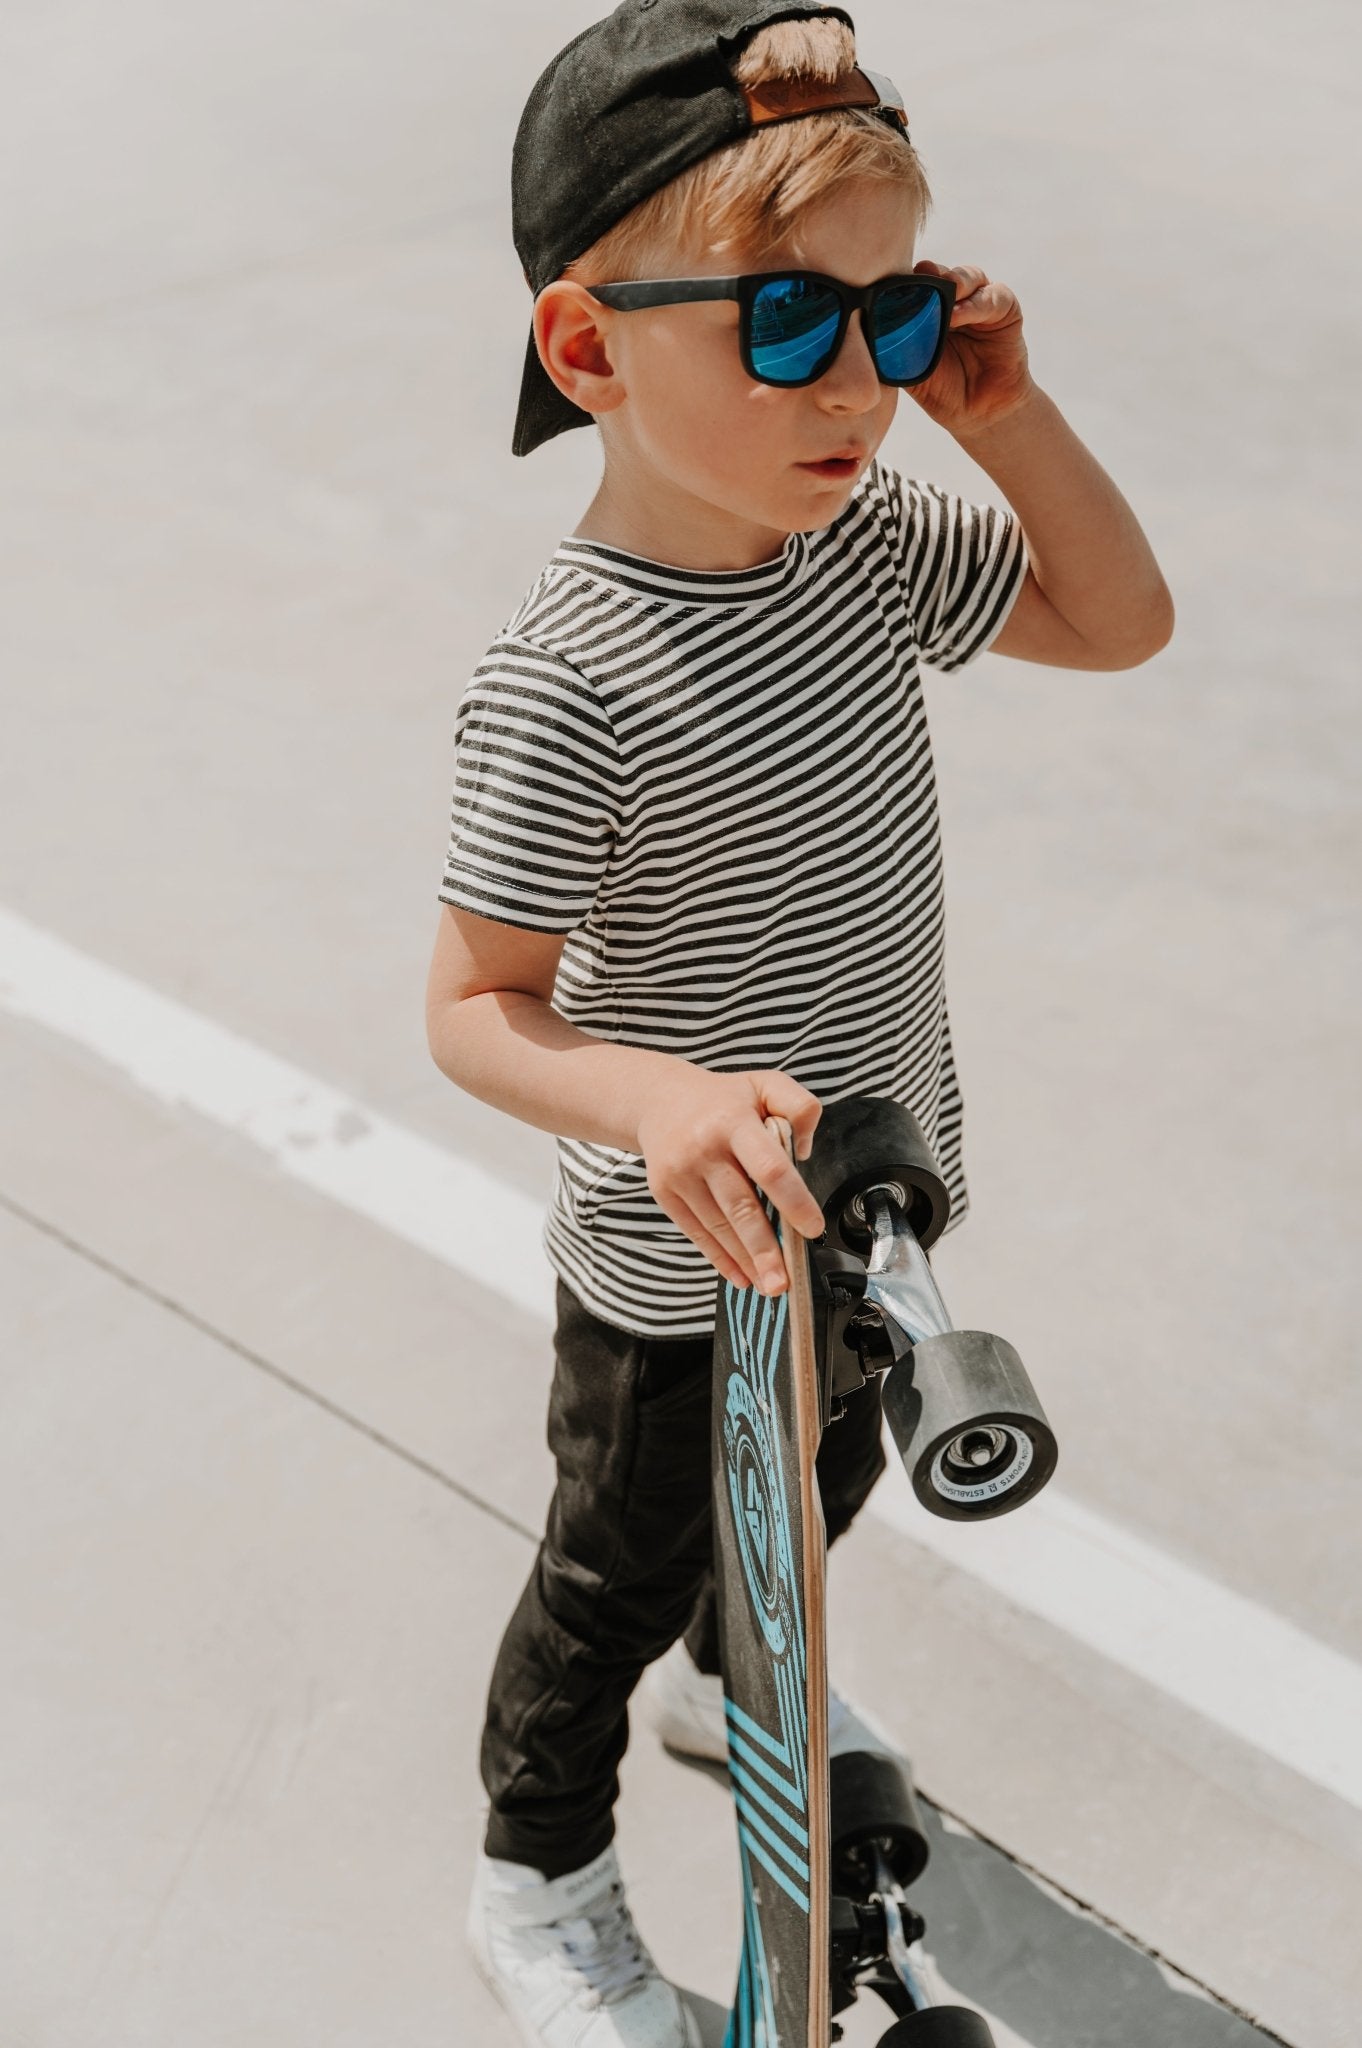 Pantalon évolutif noir style jogger en bambou pour enfant, grandeurs 0 à 6 ans